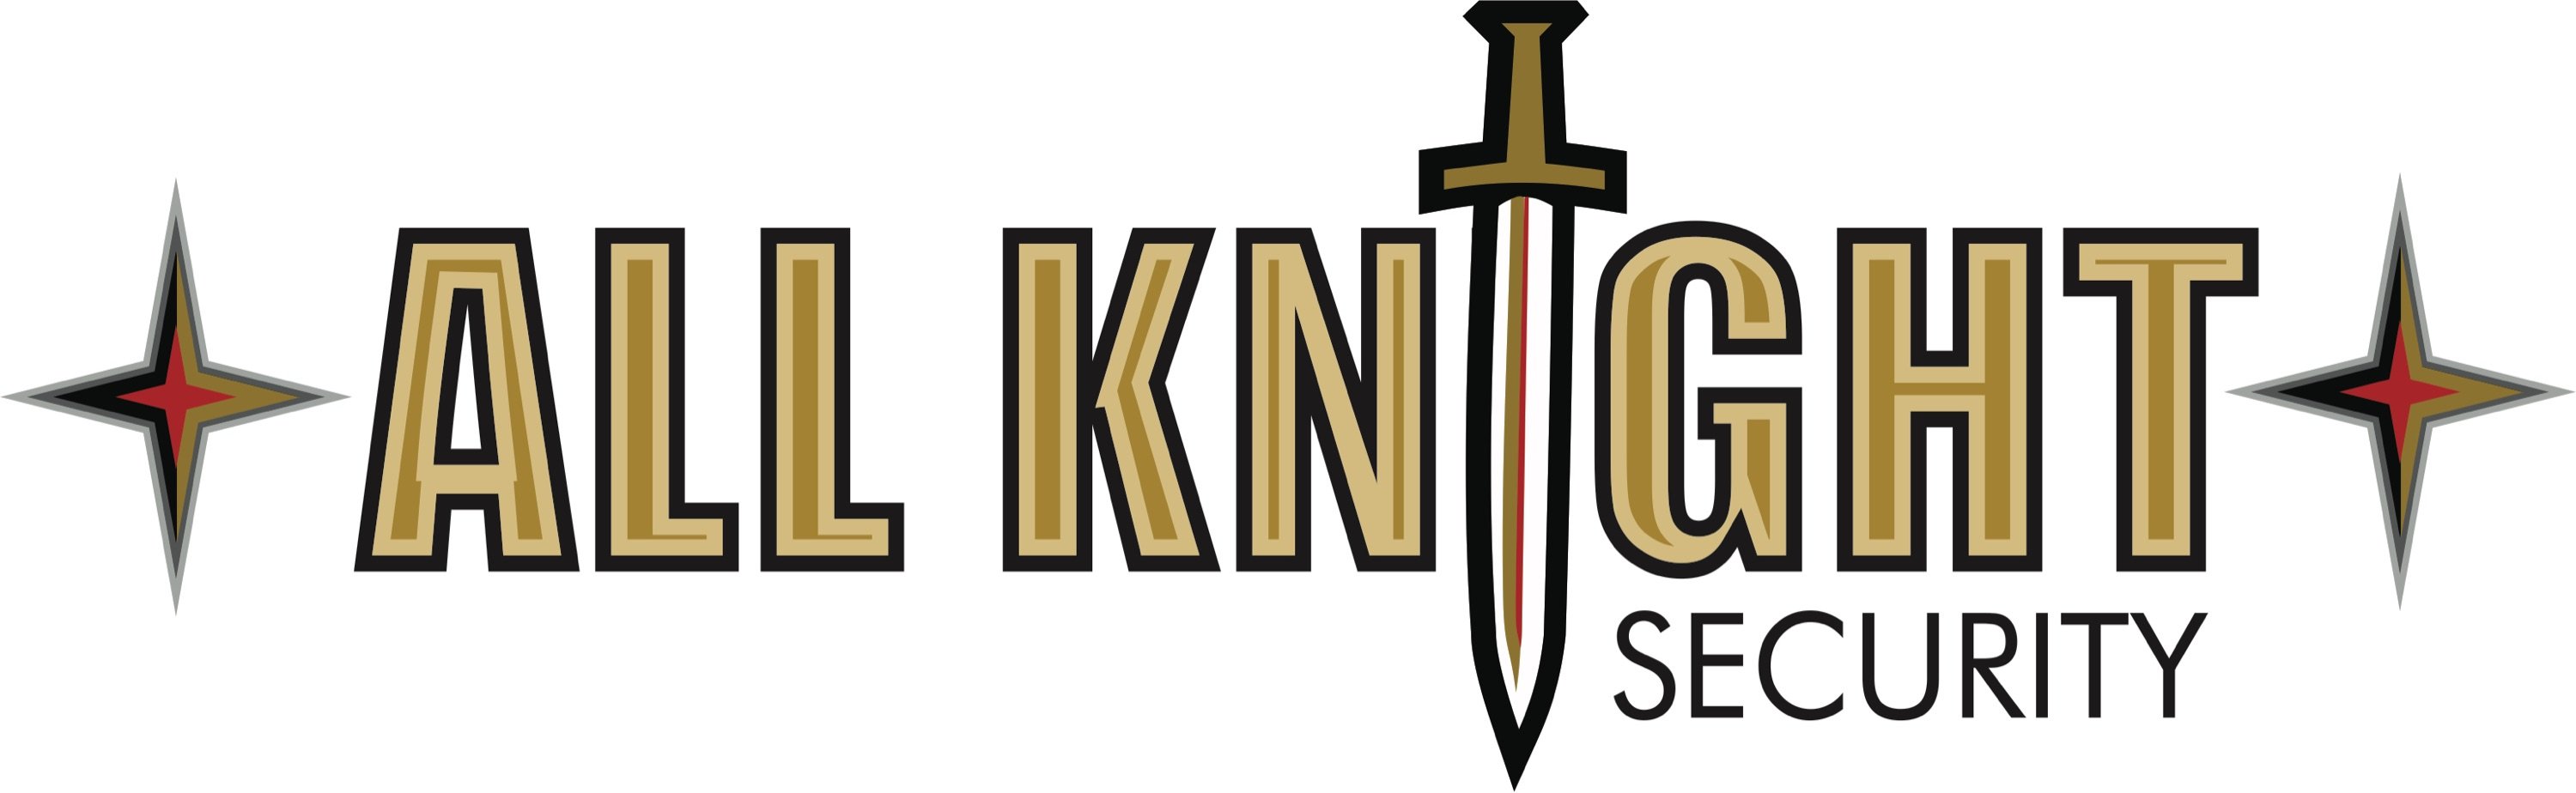 All Knight Security, LLC Logo